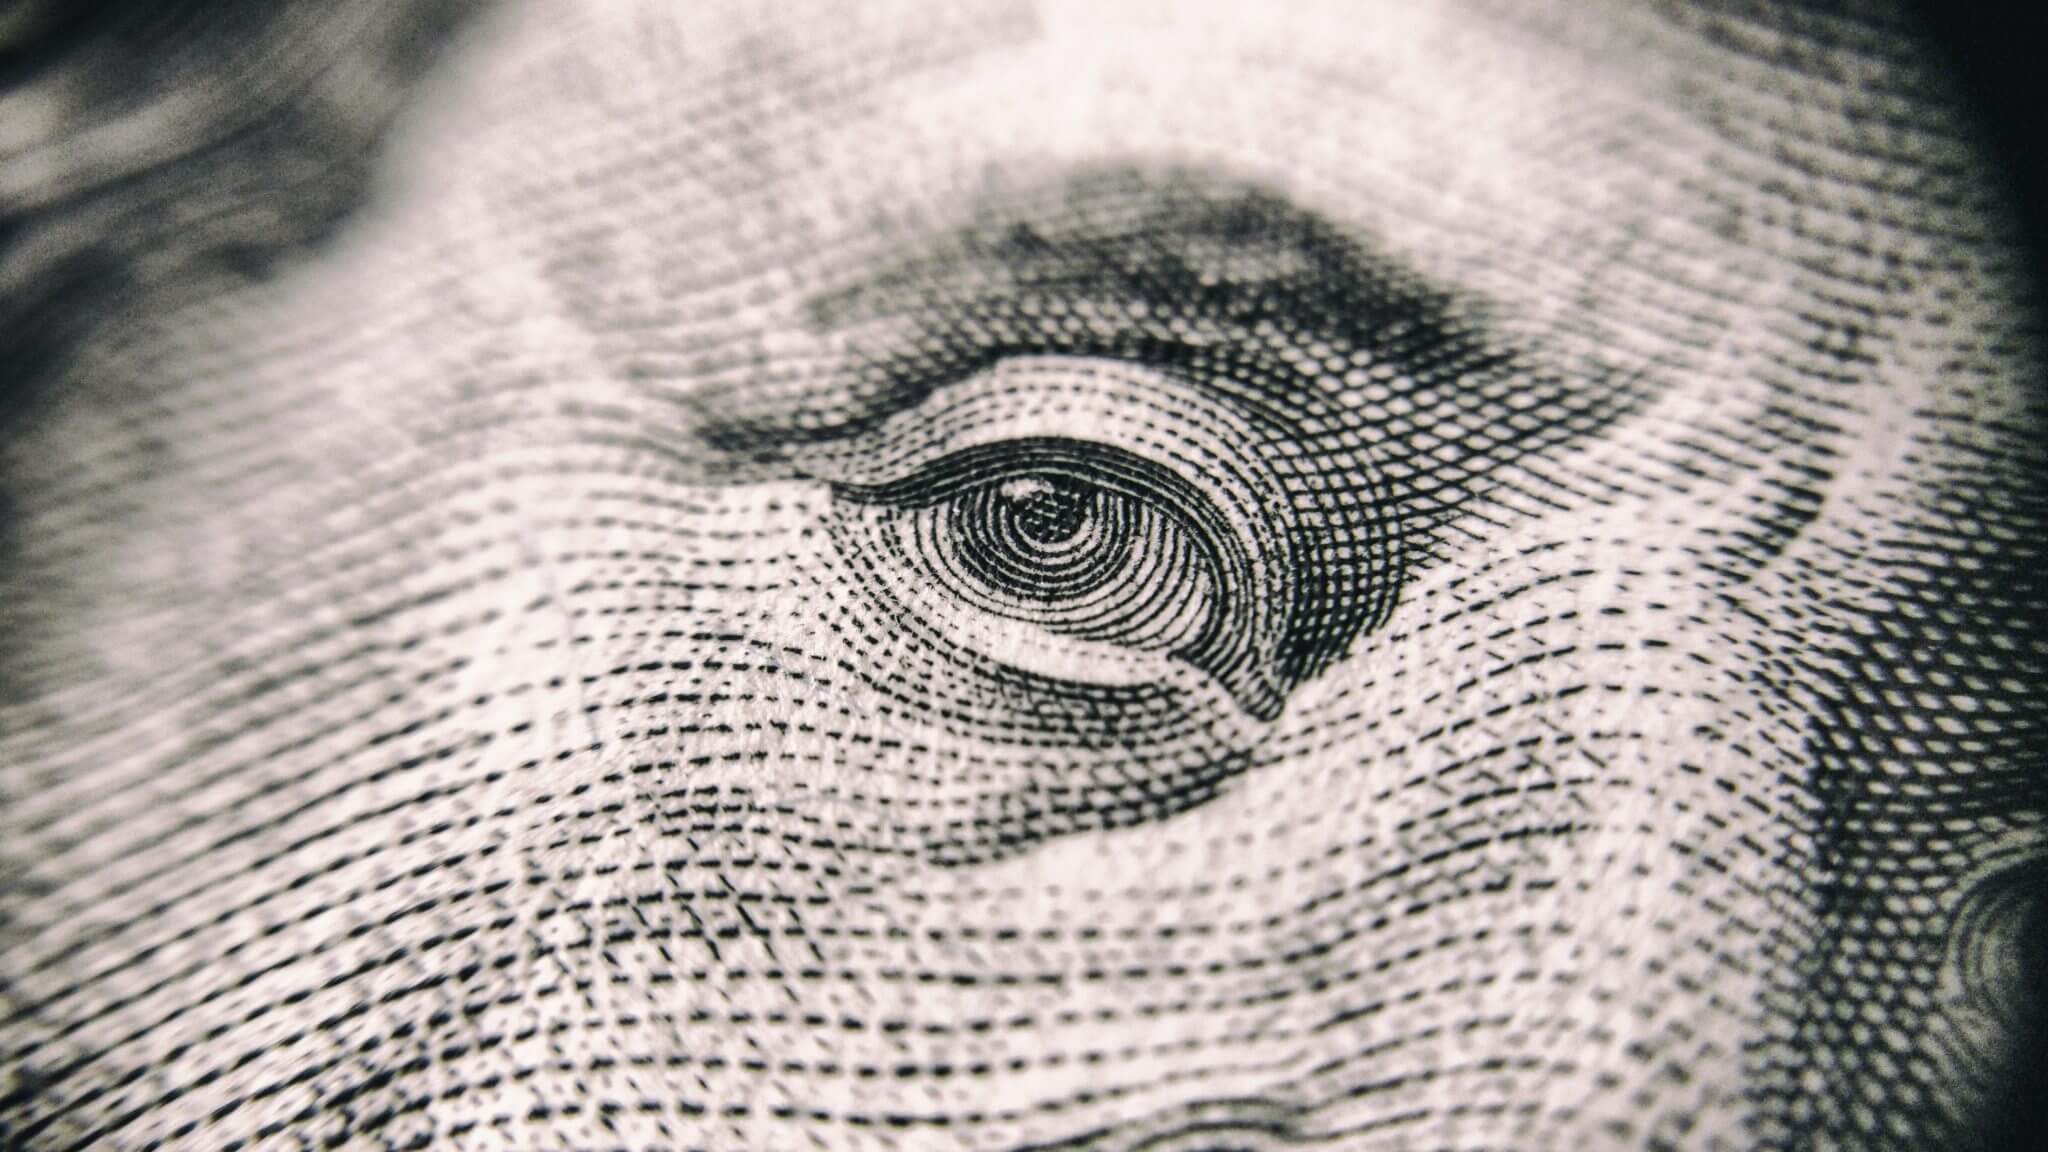 close up of bejamin franklin's eye on $100 bill